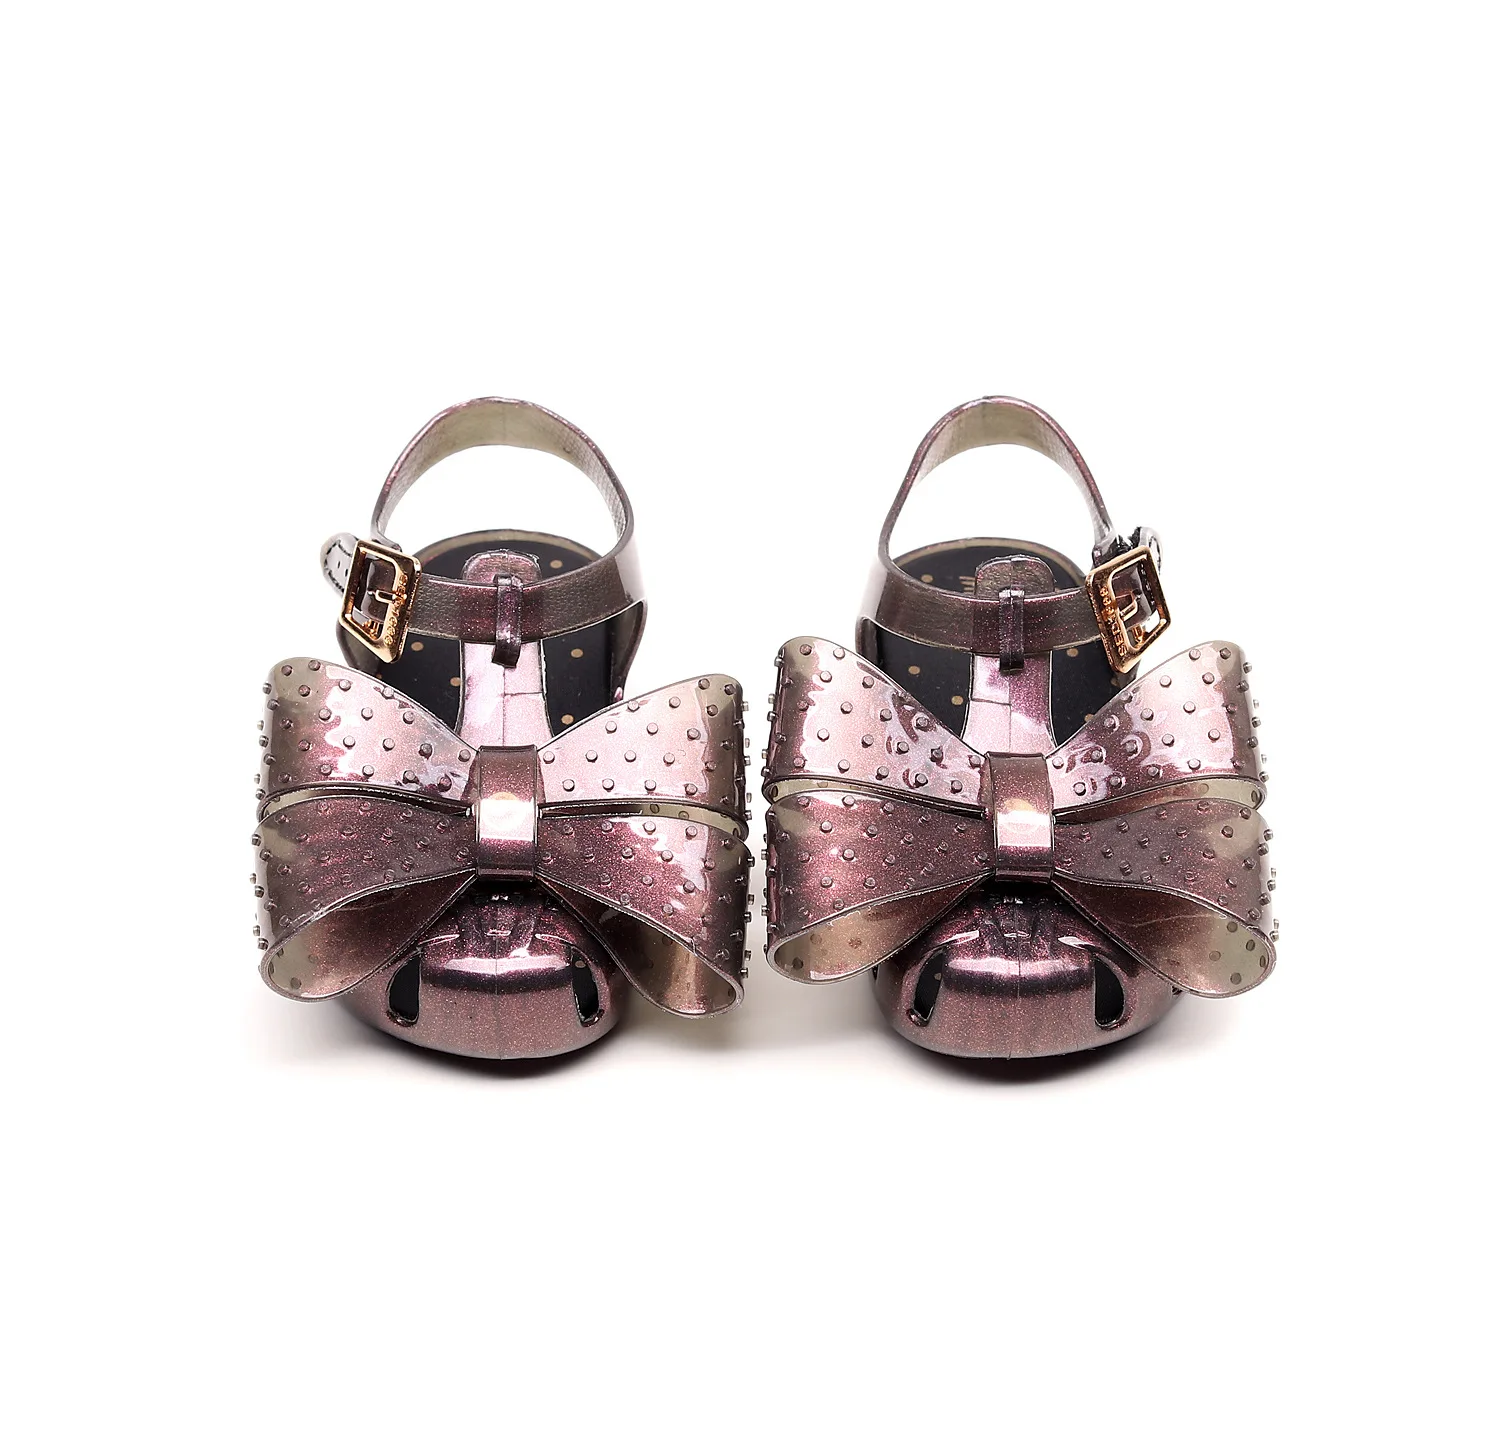 Новый мини Мелисса хранение Единорог 2019 девушка желеобразные сандалии летние сандалии Melissa/детские сандалии для девочек пляжная обувь для